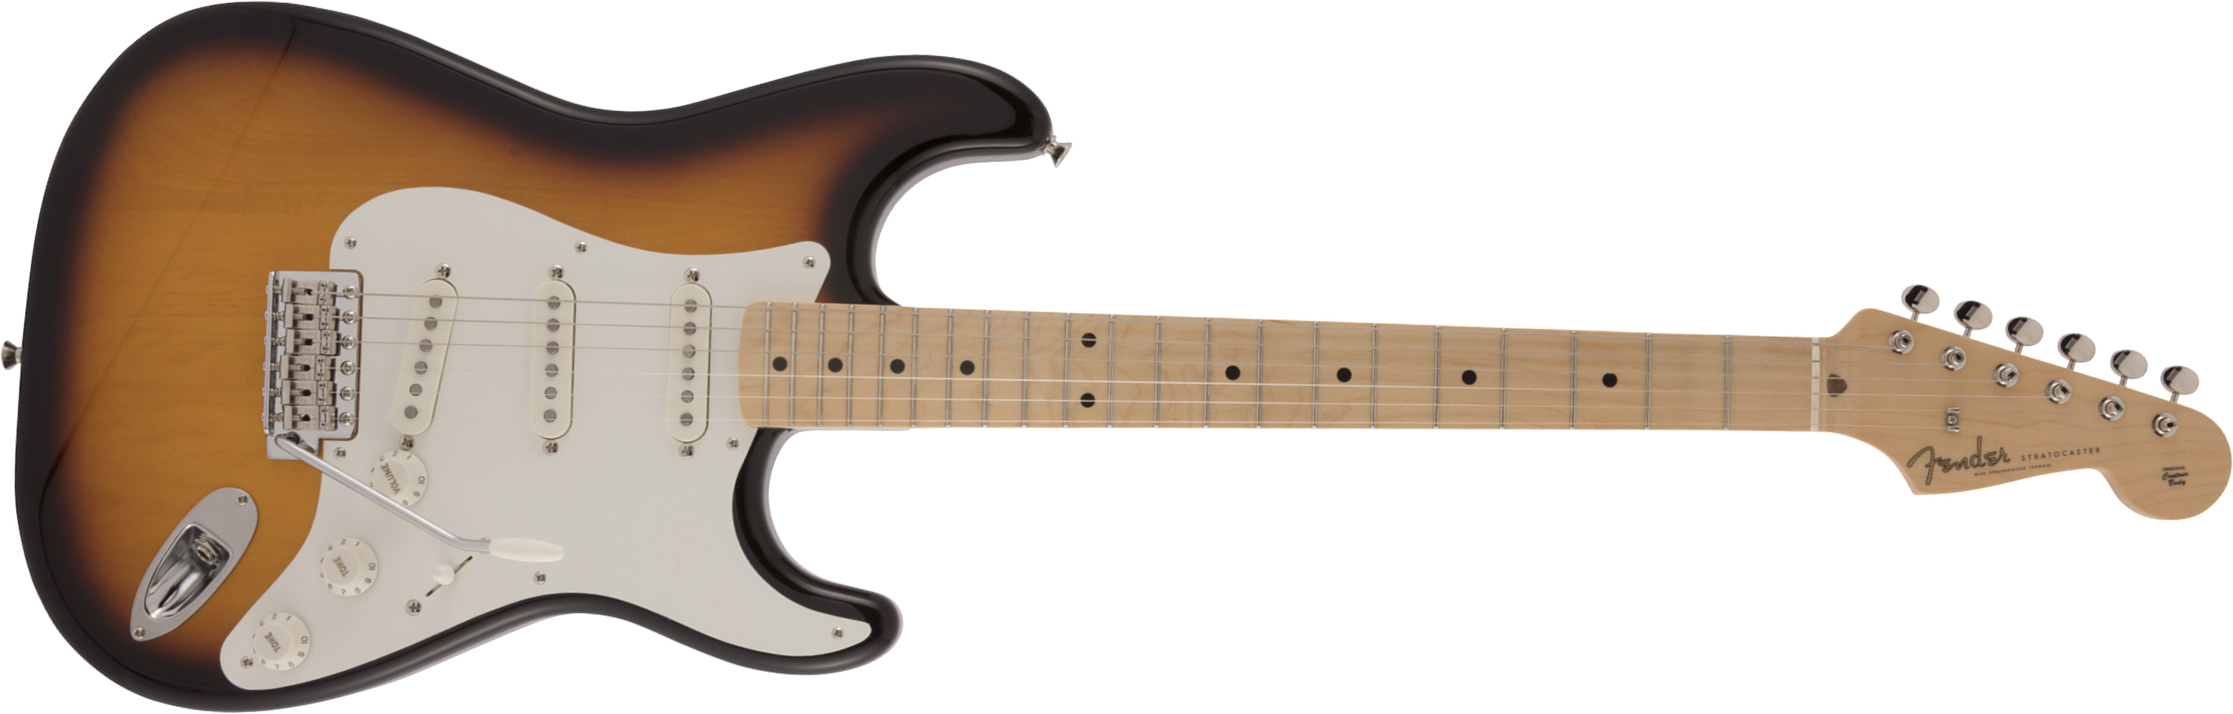 Fender Strat Traditional 50s Jap Mn - 2-color Sunburst - E-Gitarre in Str-Form - Main picture